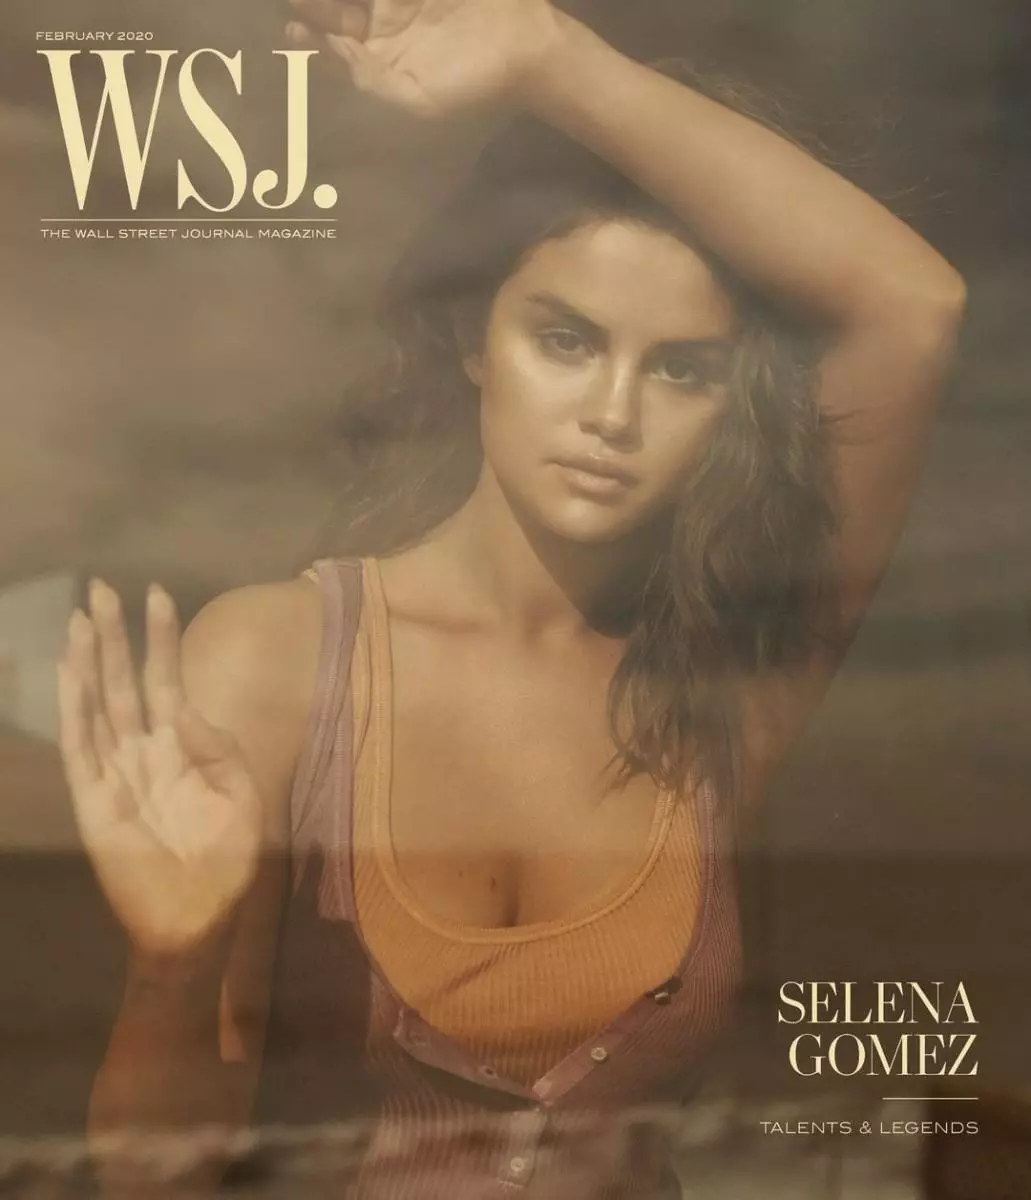 Selena Gomez nezvehupenyu hwake hwake: 